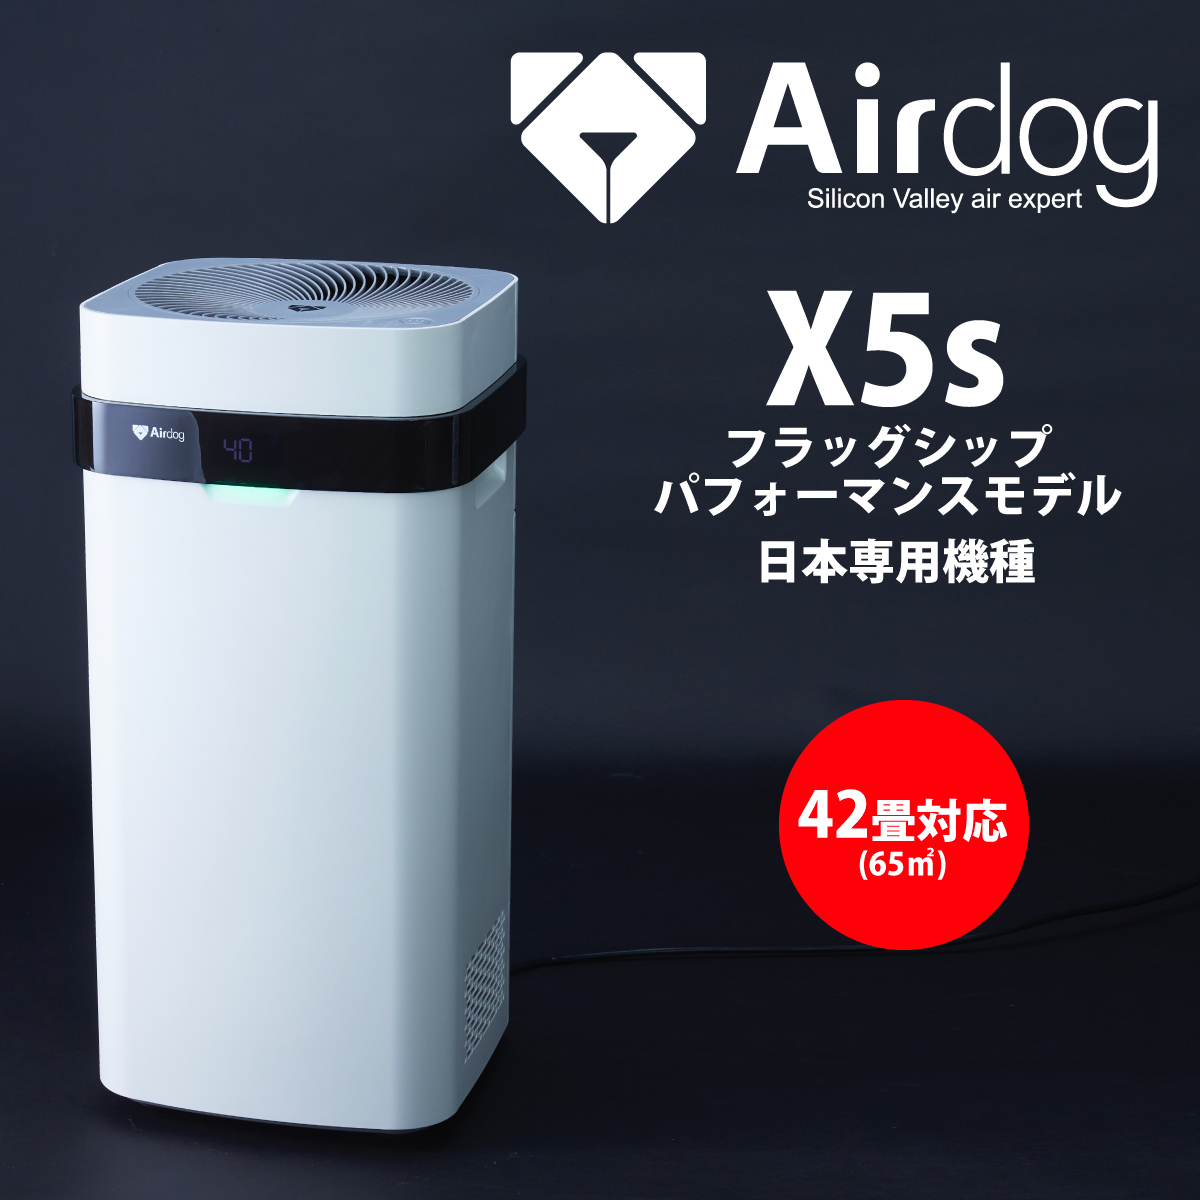 Airdog X5D 空気清浄機 モデル:KJ300F-X5D - 冷暖房/空調